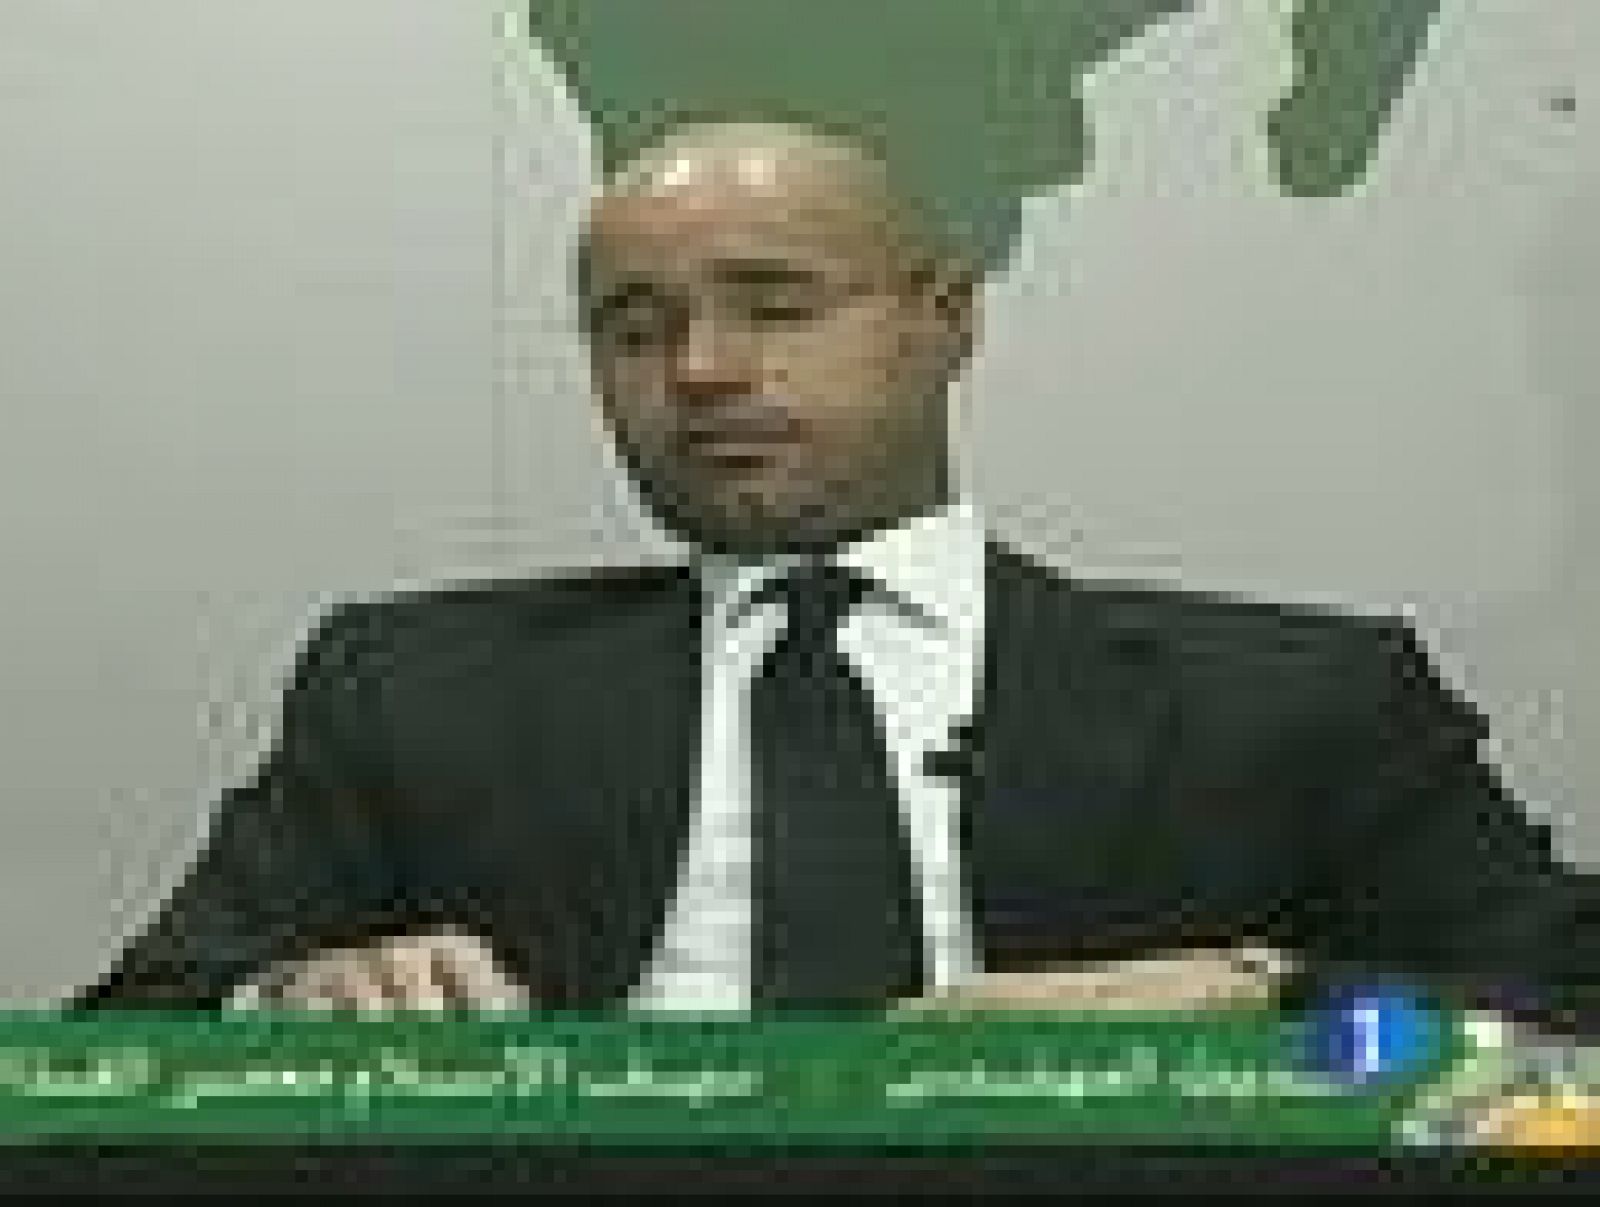 El hijo de Gadafi amenaza con que habrá "ríos de sangre" si no cesa la rebelión